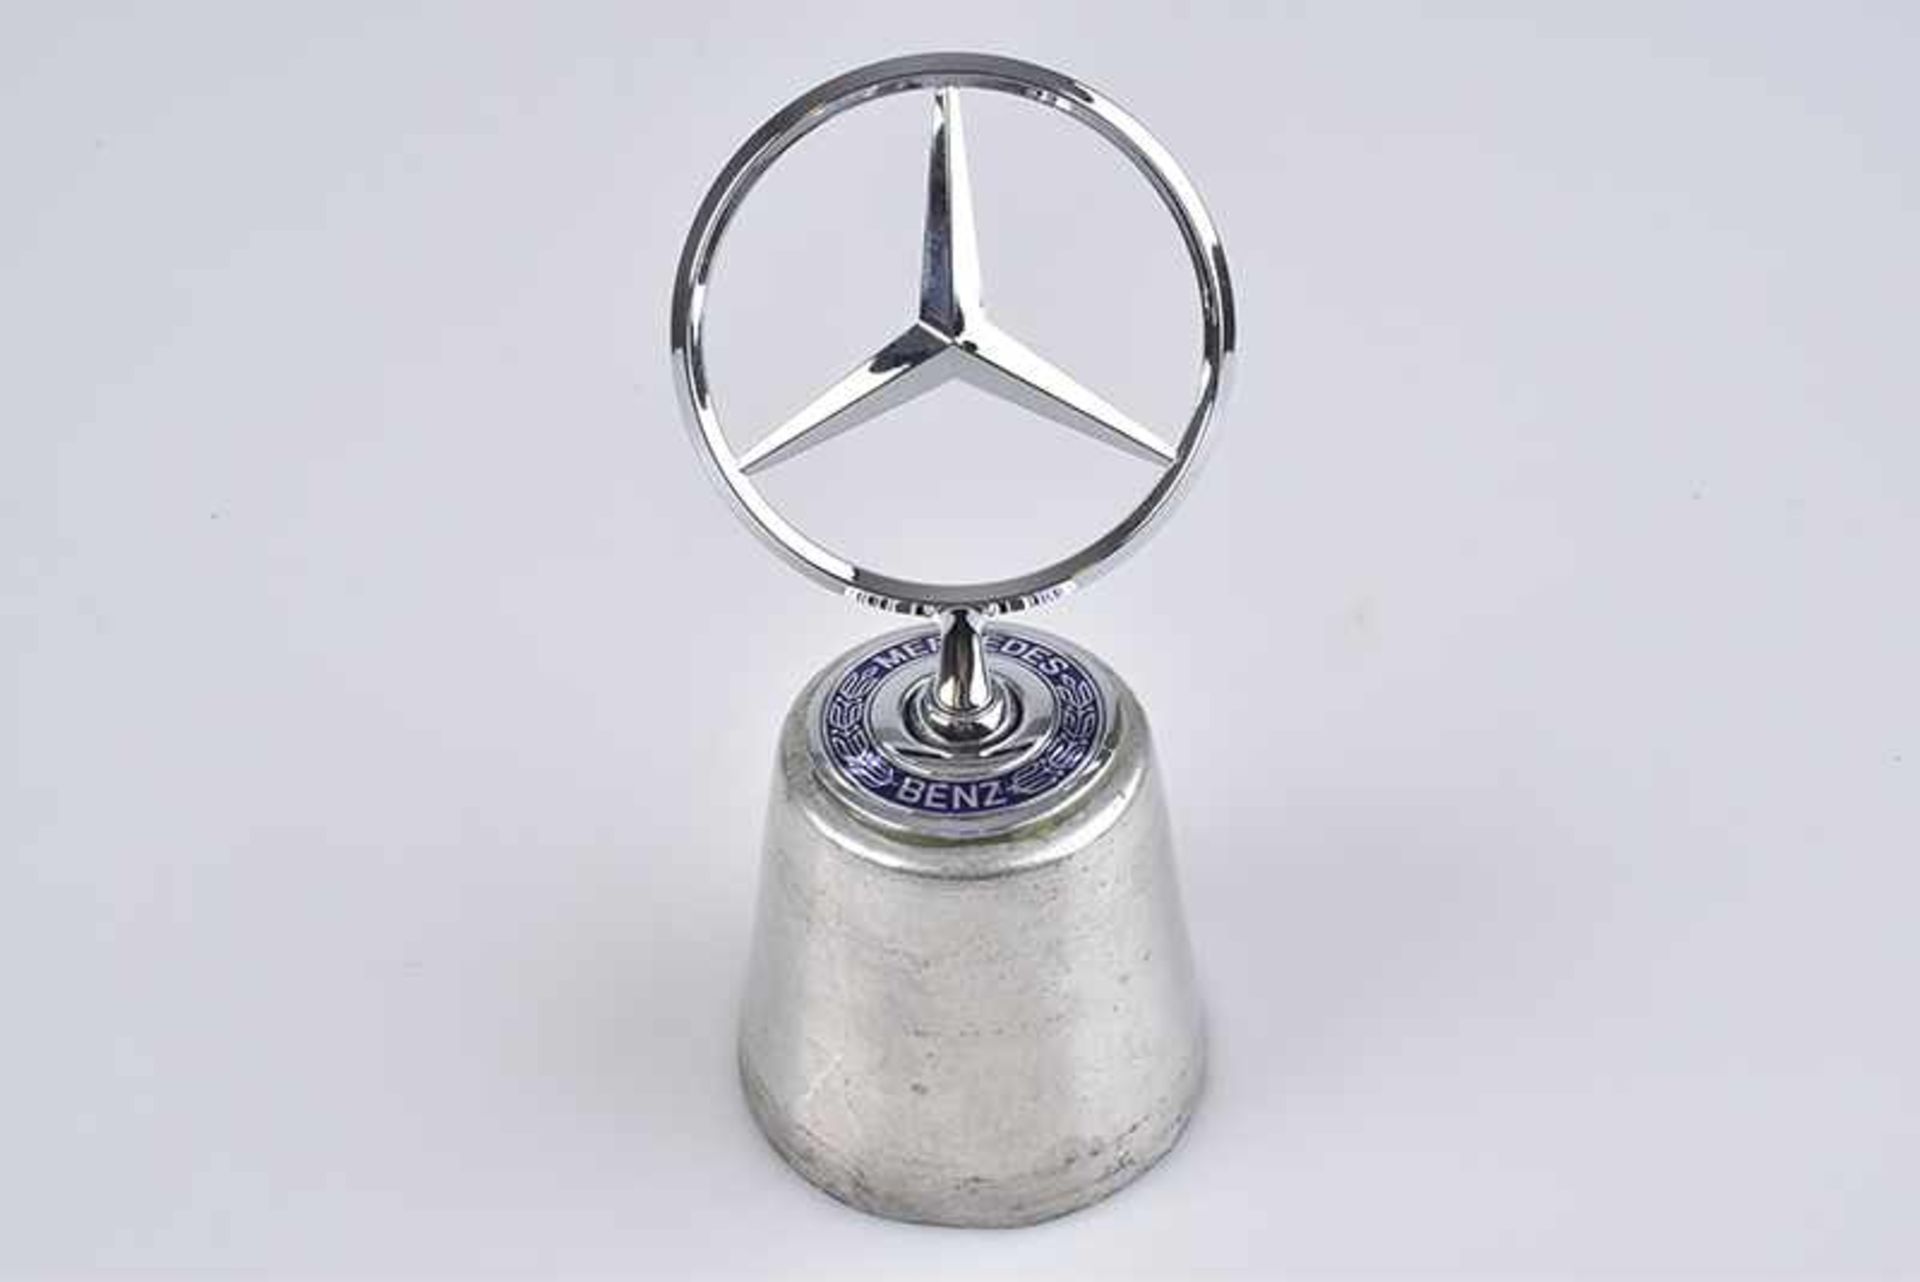 Emblem/ Kühlerfigur/ Car Mascot Mercedes Stern, Metall, verchromt, D 7 cm, auf Metall-Sockel